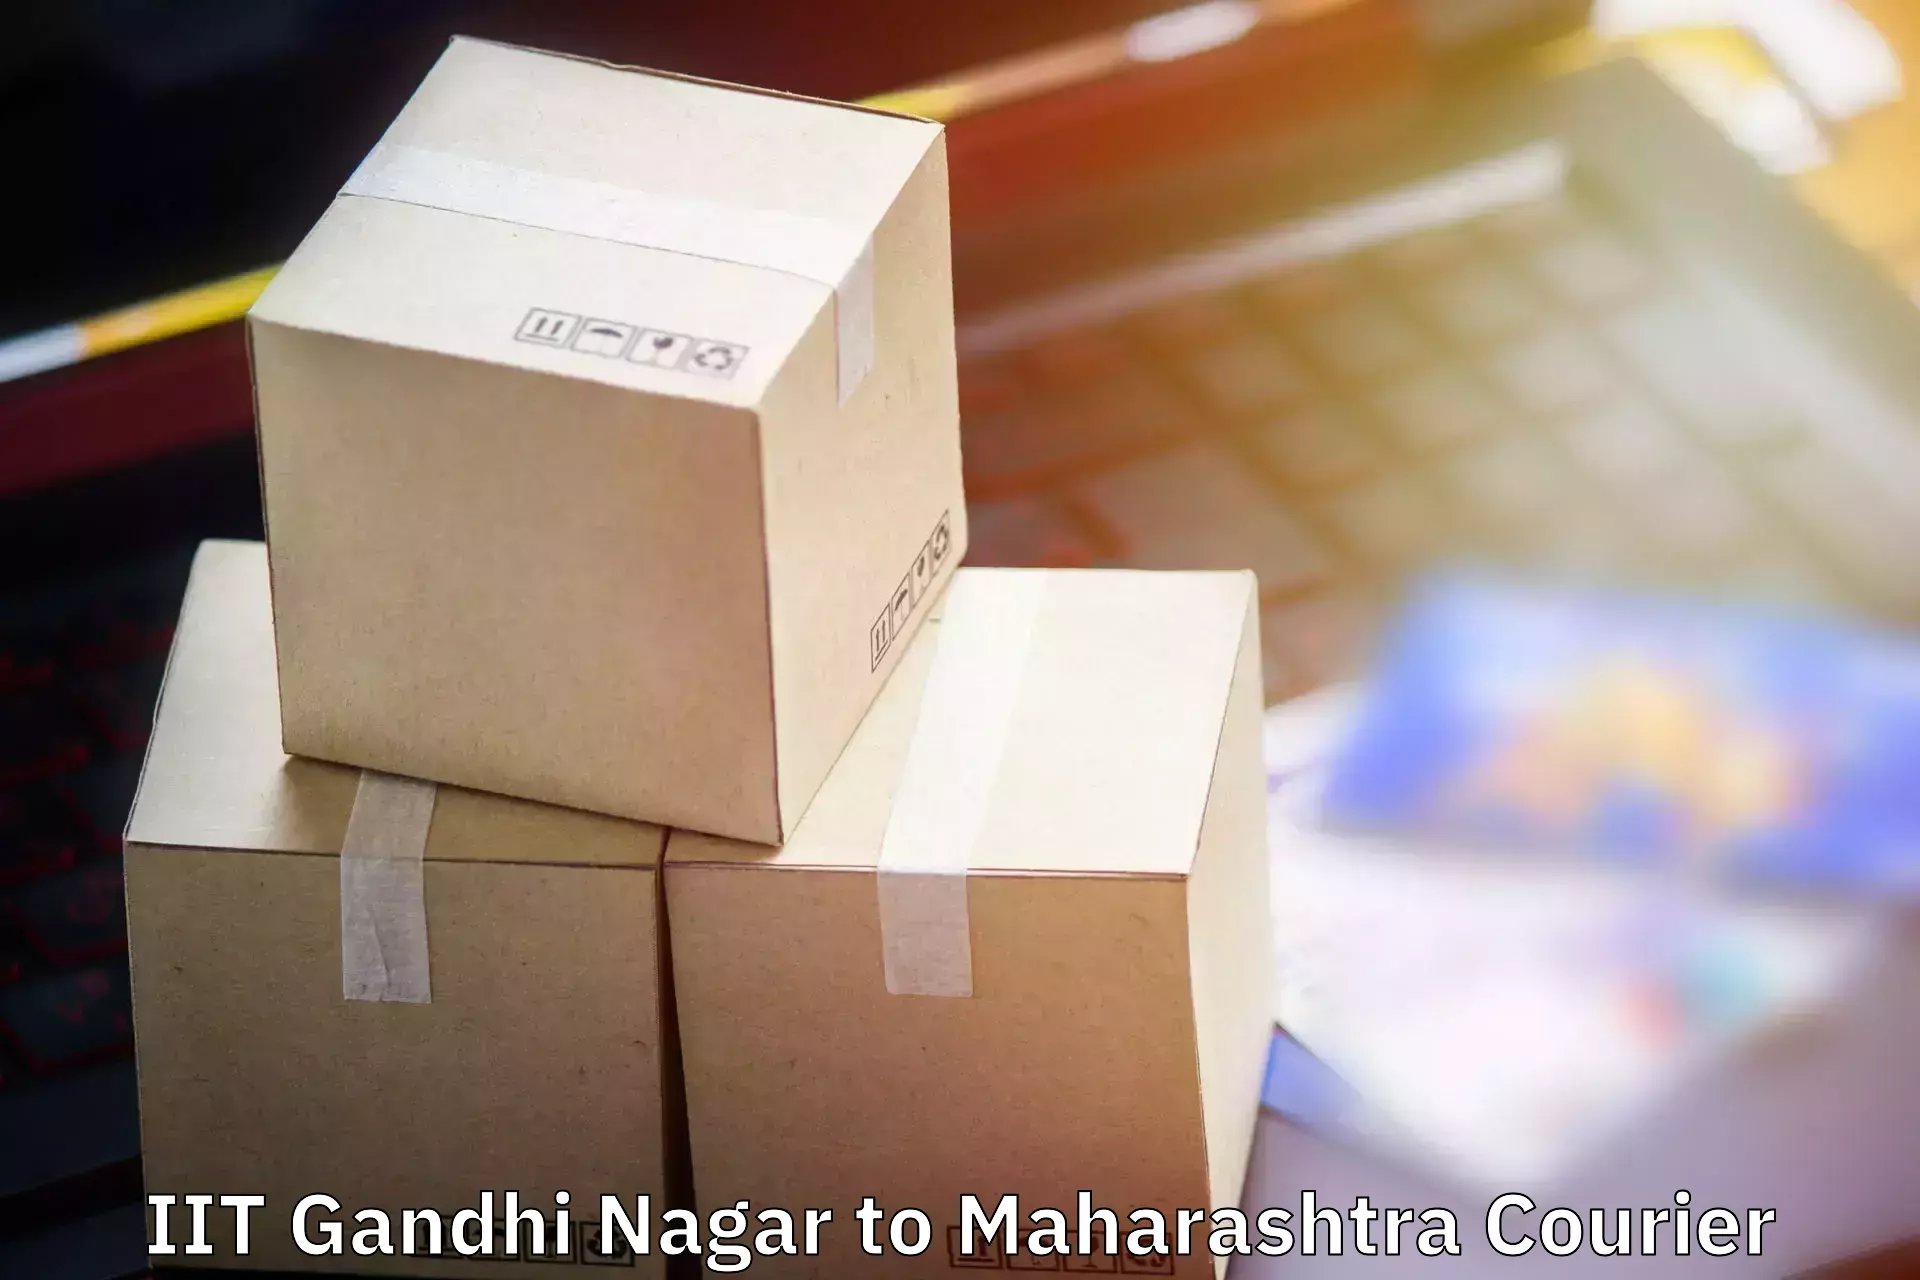 Luggage shipping service IIT Gandhi Nagar to Digras